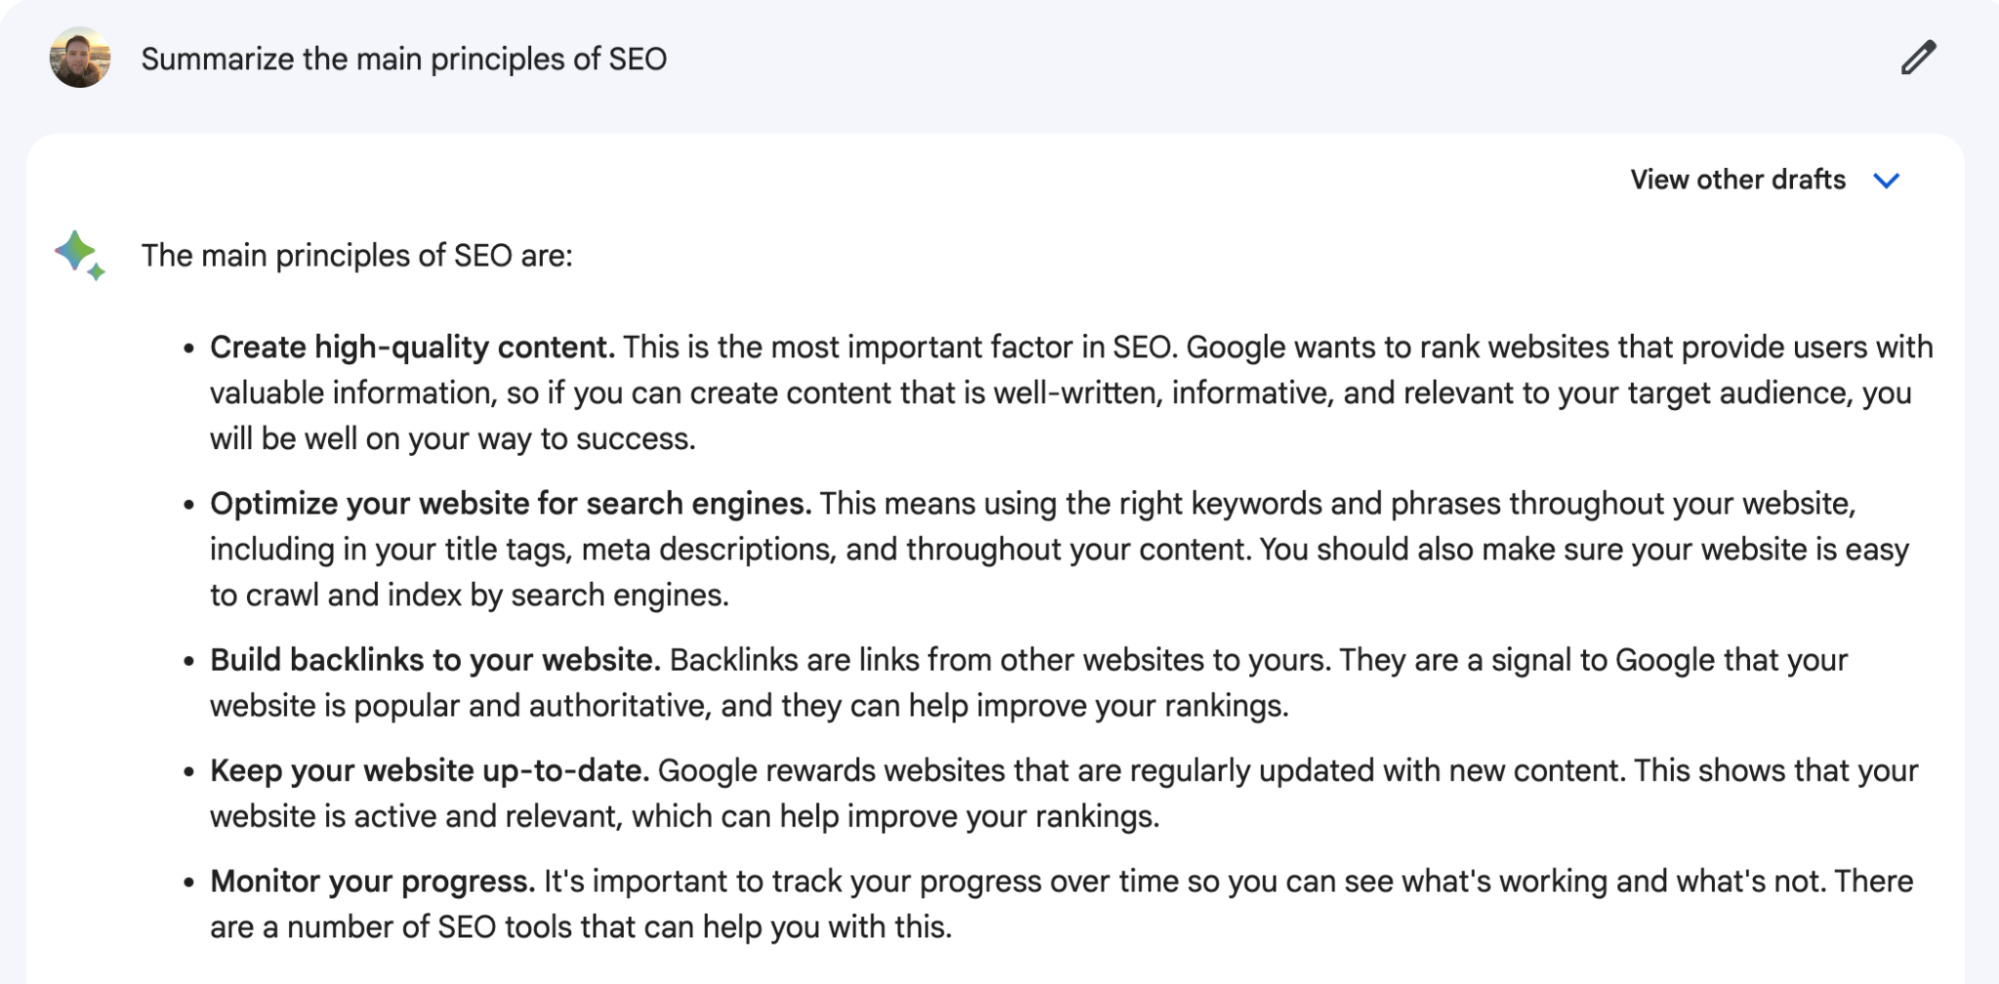 Google Bard vragen om de belangrijkste principes van SEO samen te vatten